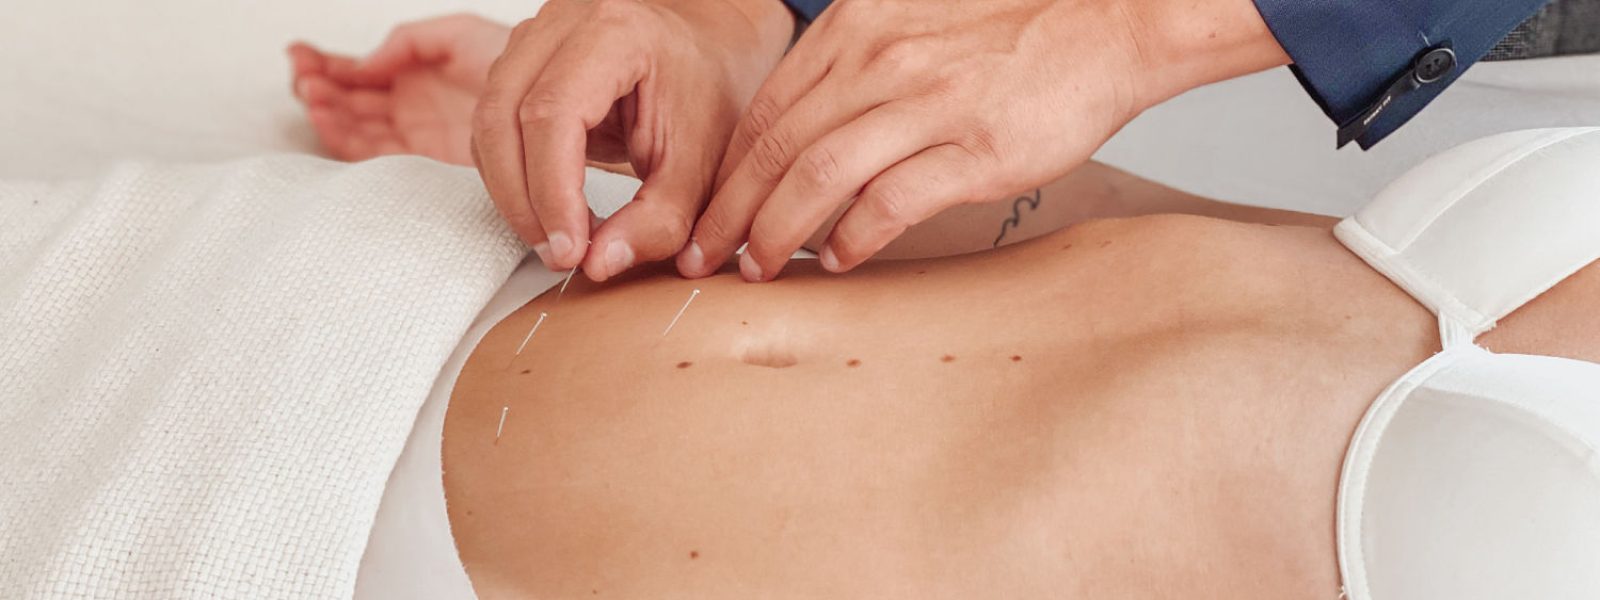 akupunktur Fertilitetsbehandling